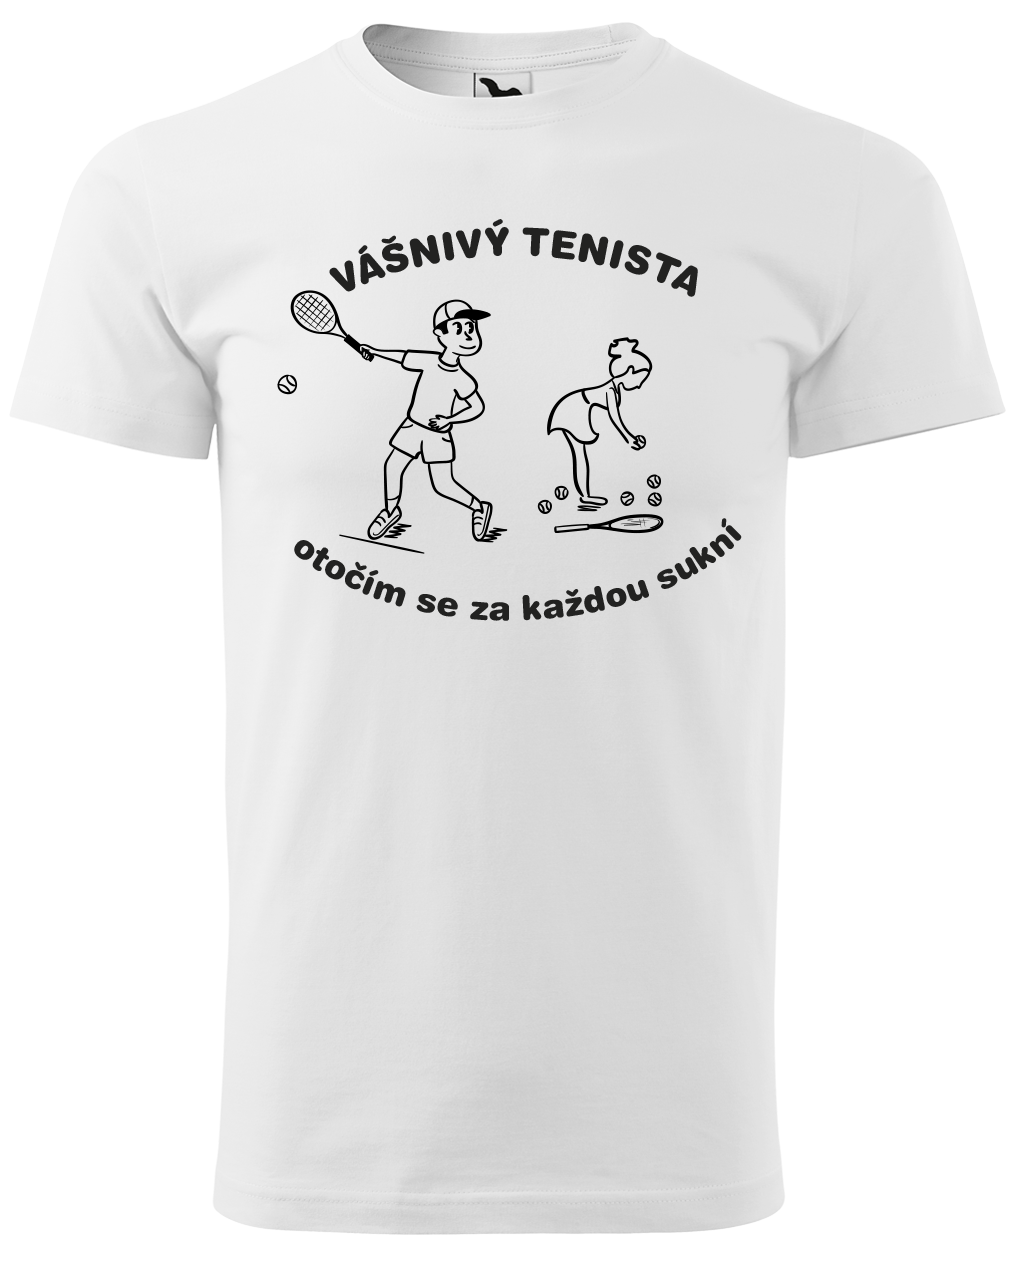 Vtipné tenisové tričko - Vášnivý tenista Velikost: XL, Barva: Bílá (00)